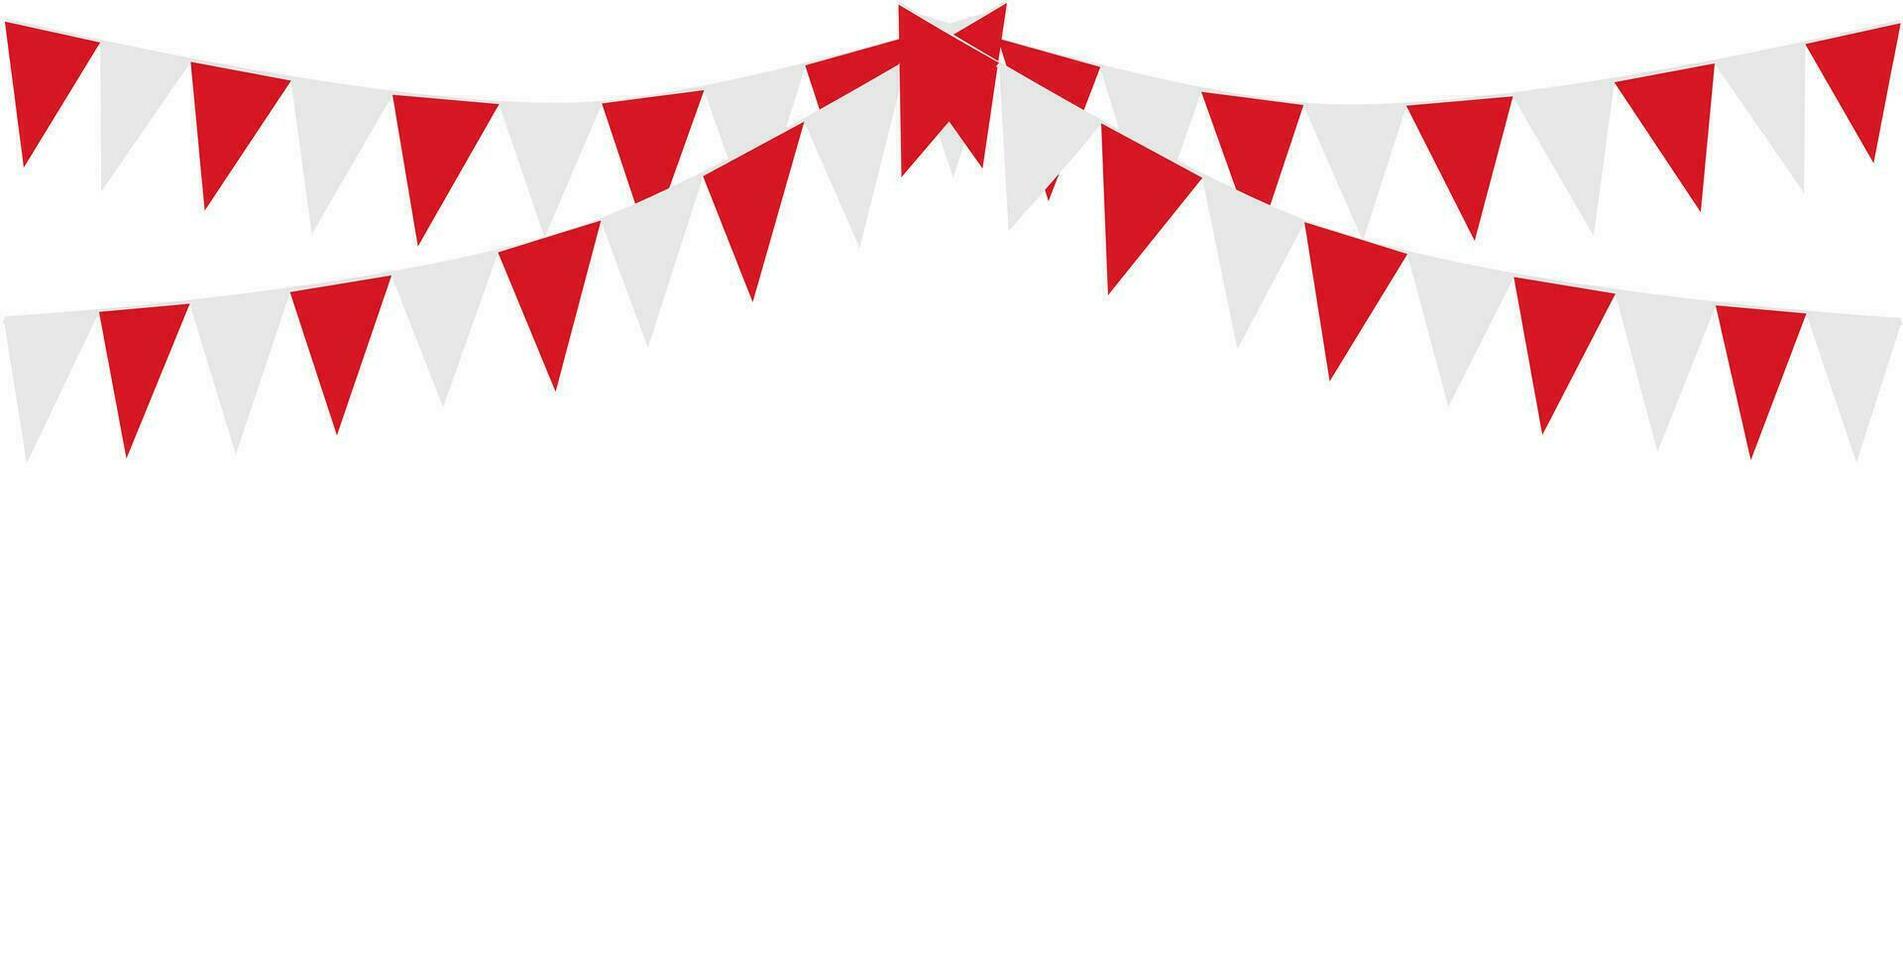 bruant pendaison rouge et blanc drapeau Triangles bannière Contexte. bruant drapeaux pour fête, faire la fête, équitable, marché, vente. Chine, Canada, Suisse, Danemark concepts. vecteur